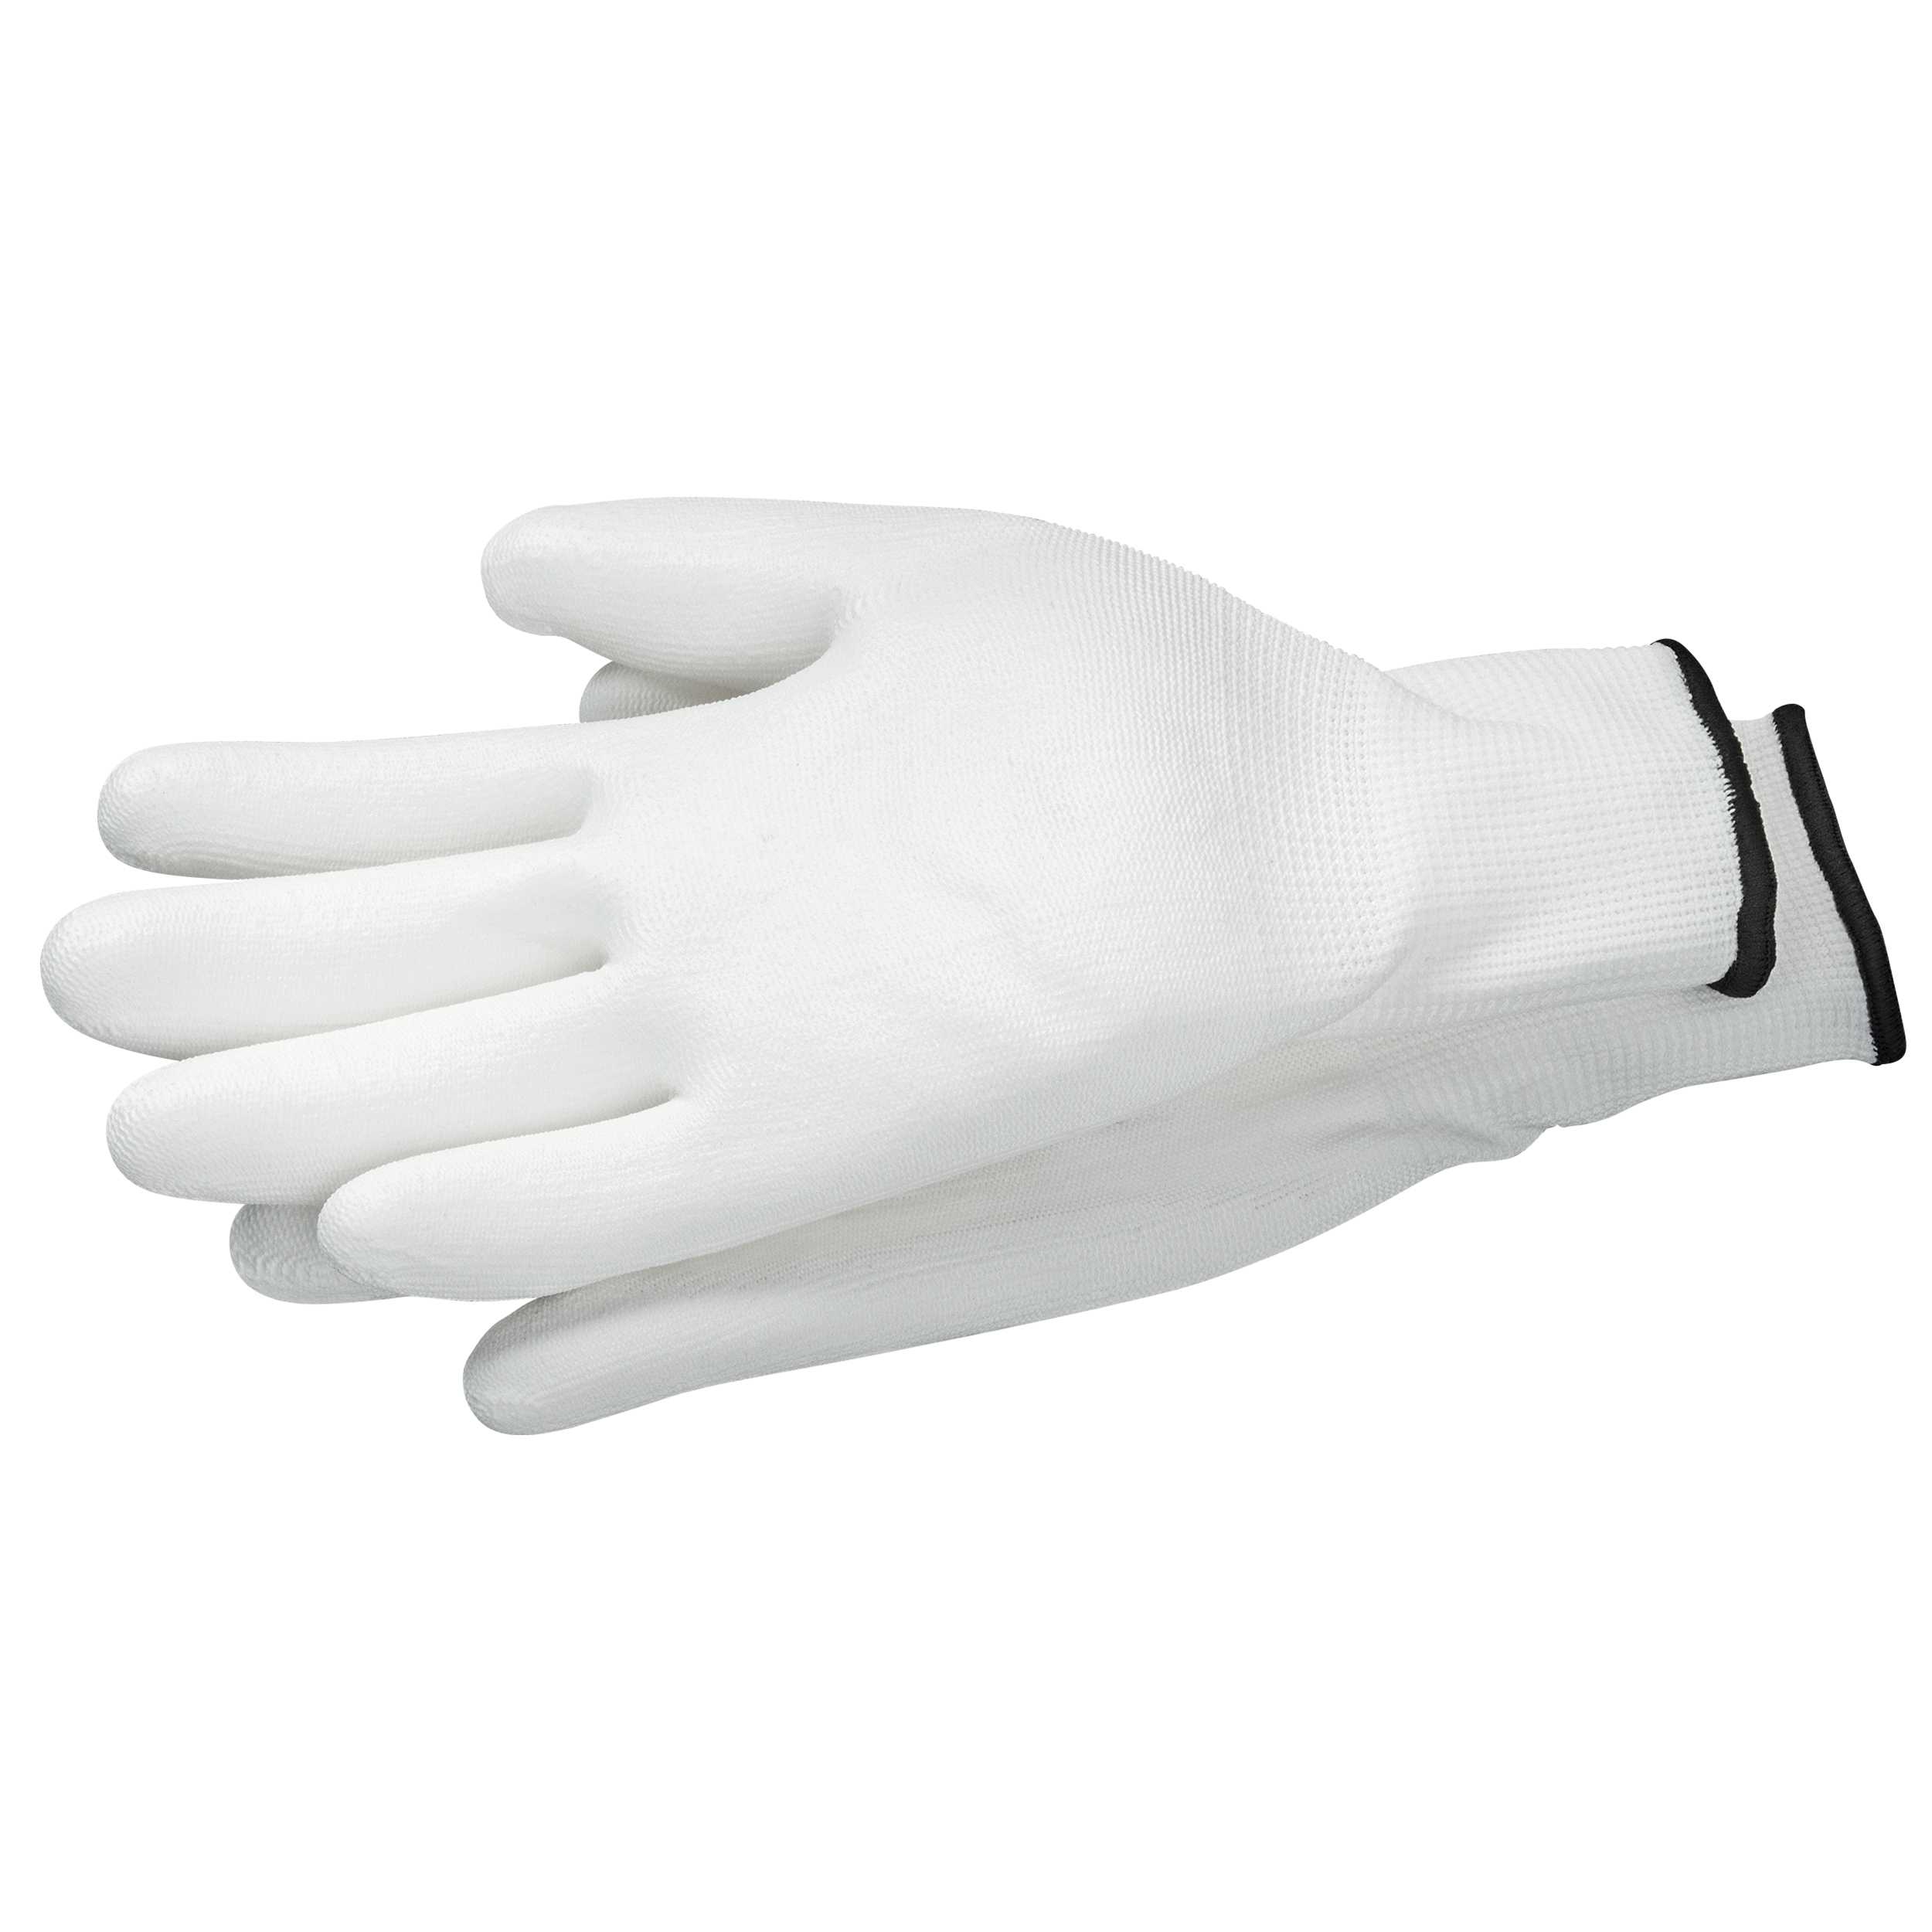 Handschuhe SensoGrip PU weiß EN388 Größe 10 (XL)